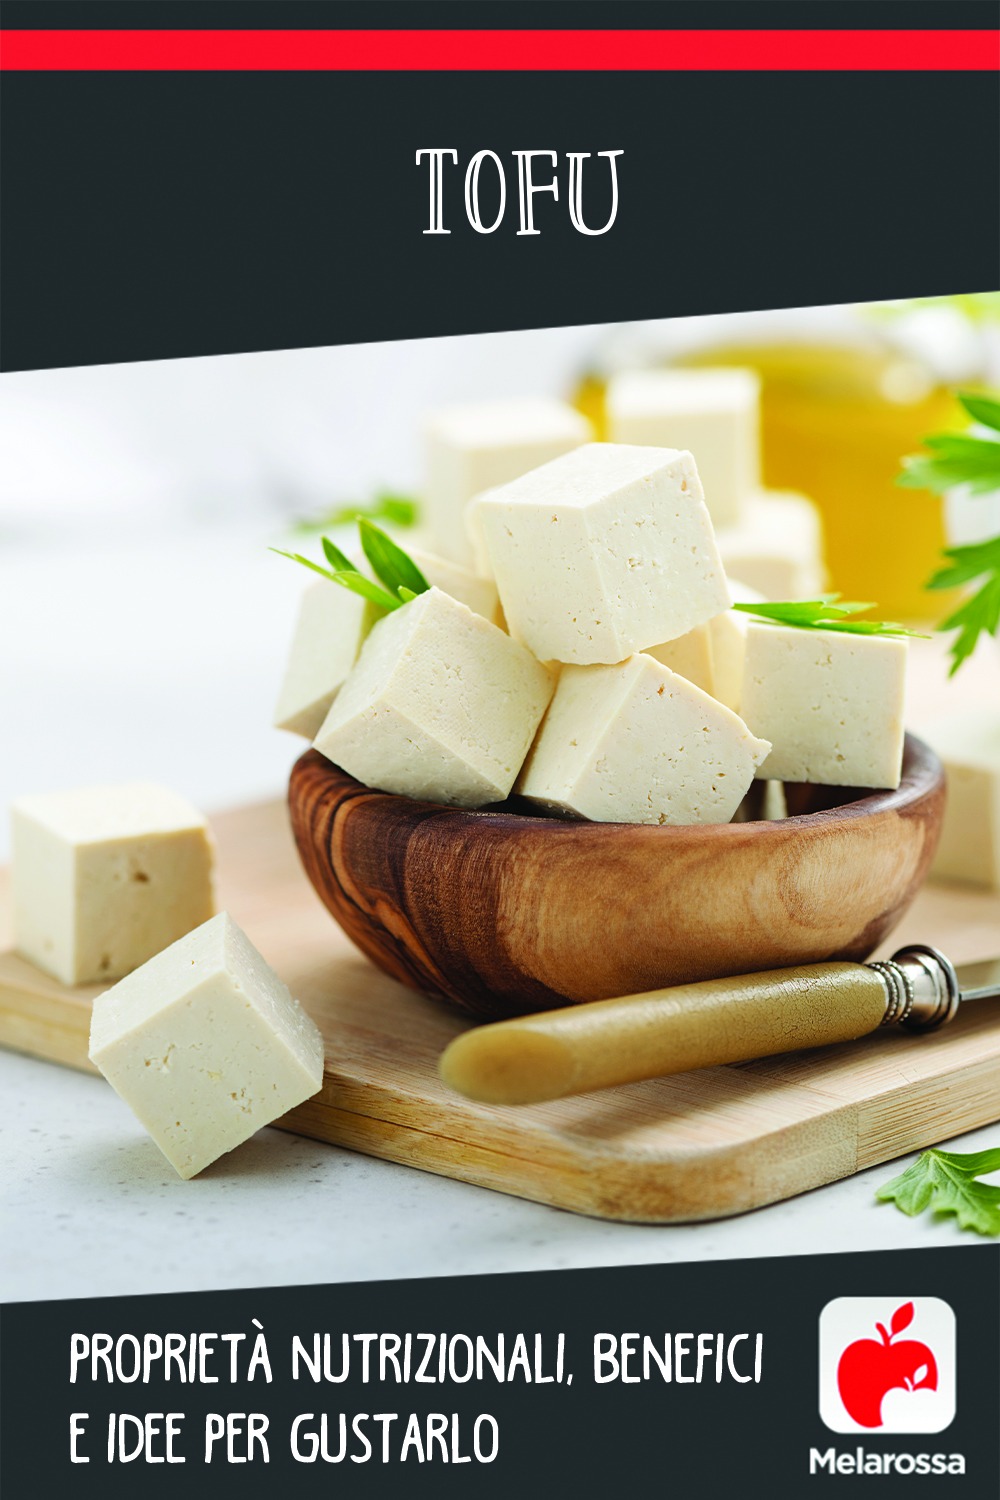 Tofu: proprietà nutrizionali, benefici e idee per gustarlo